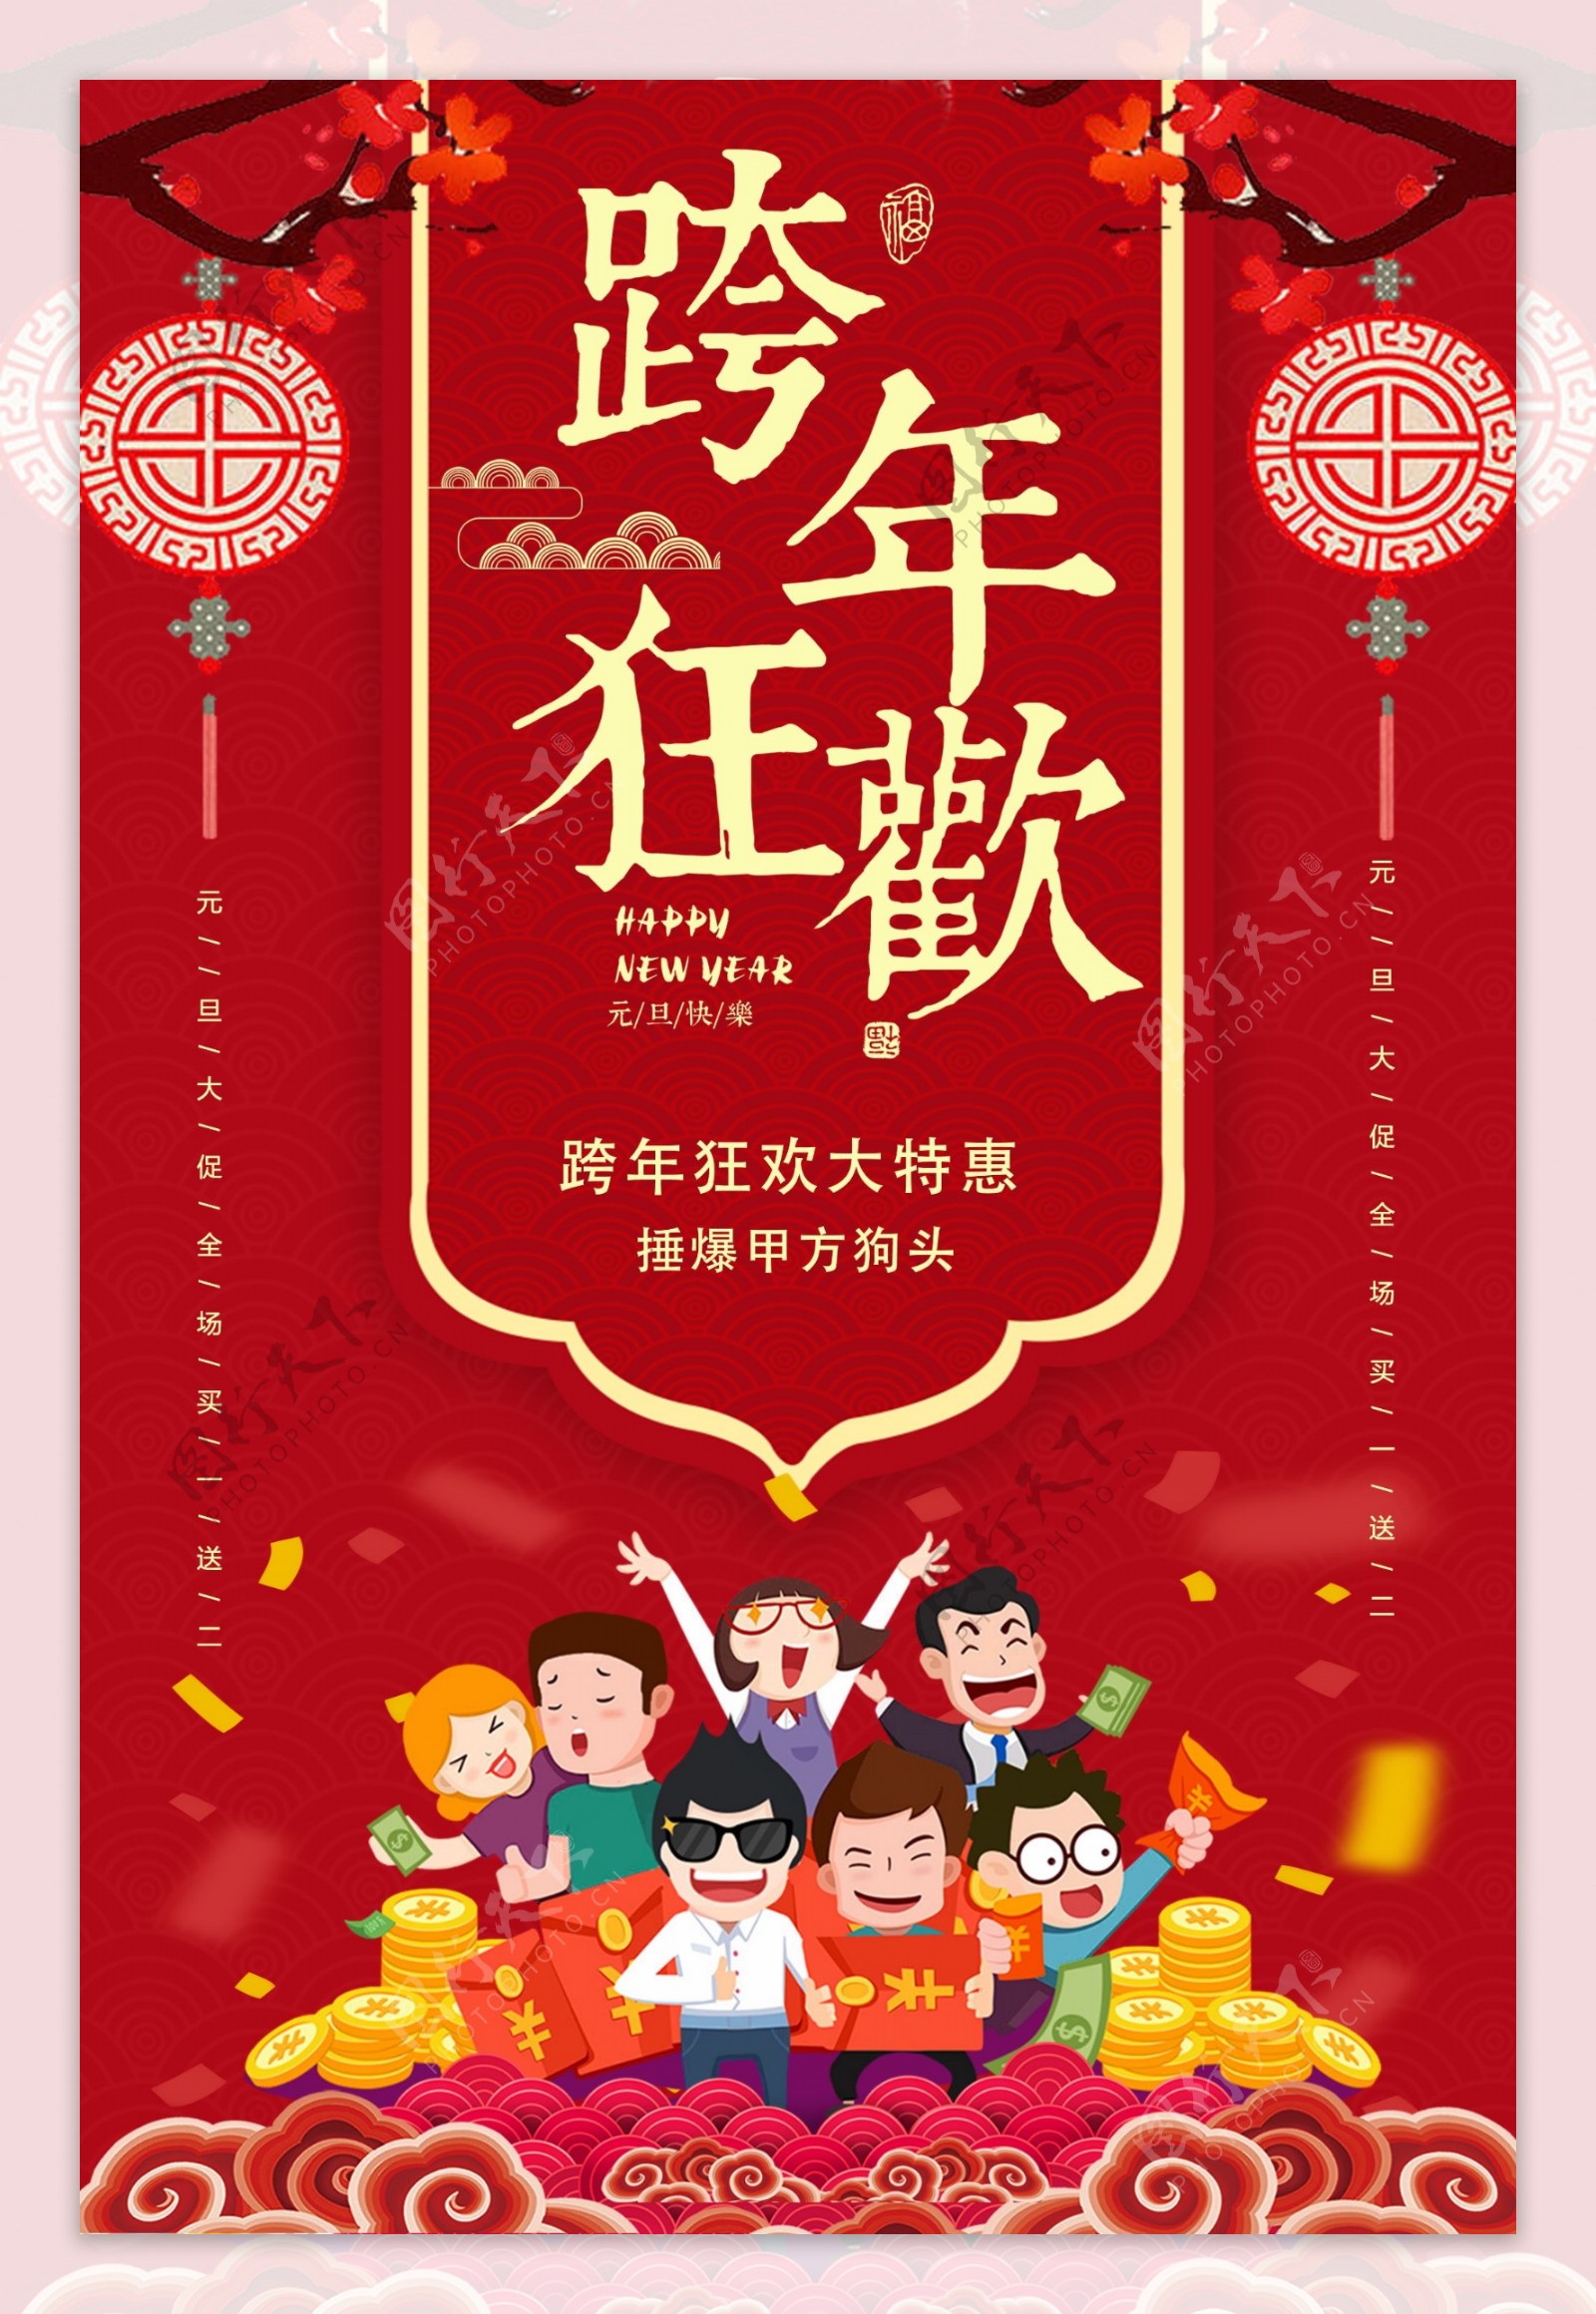 红色剪纸跨年狂欢元旦促销海报